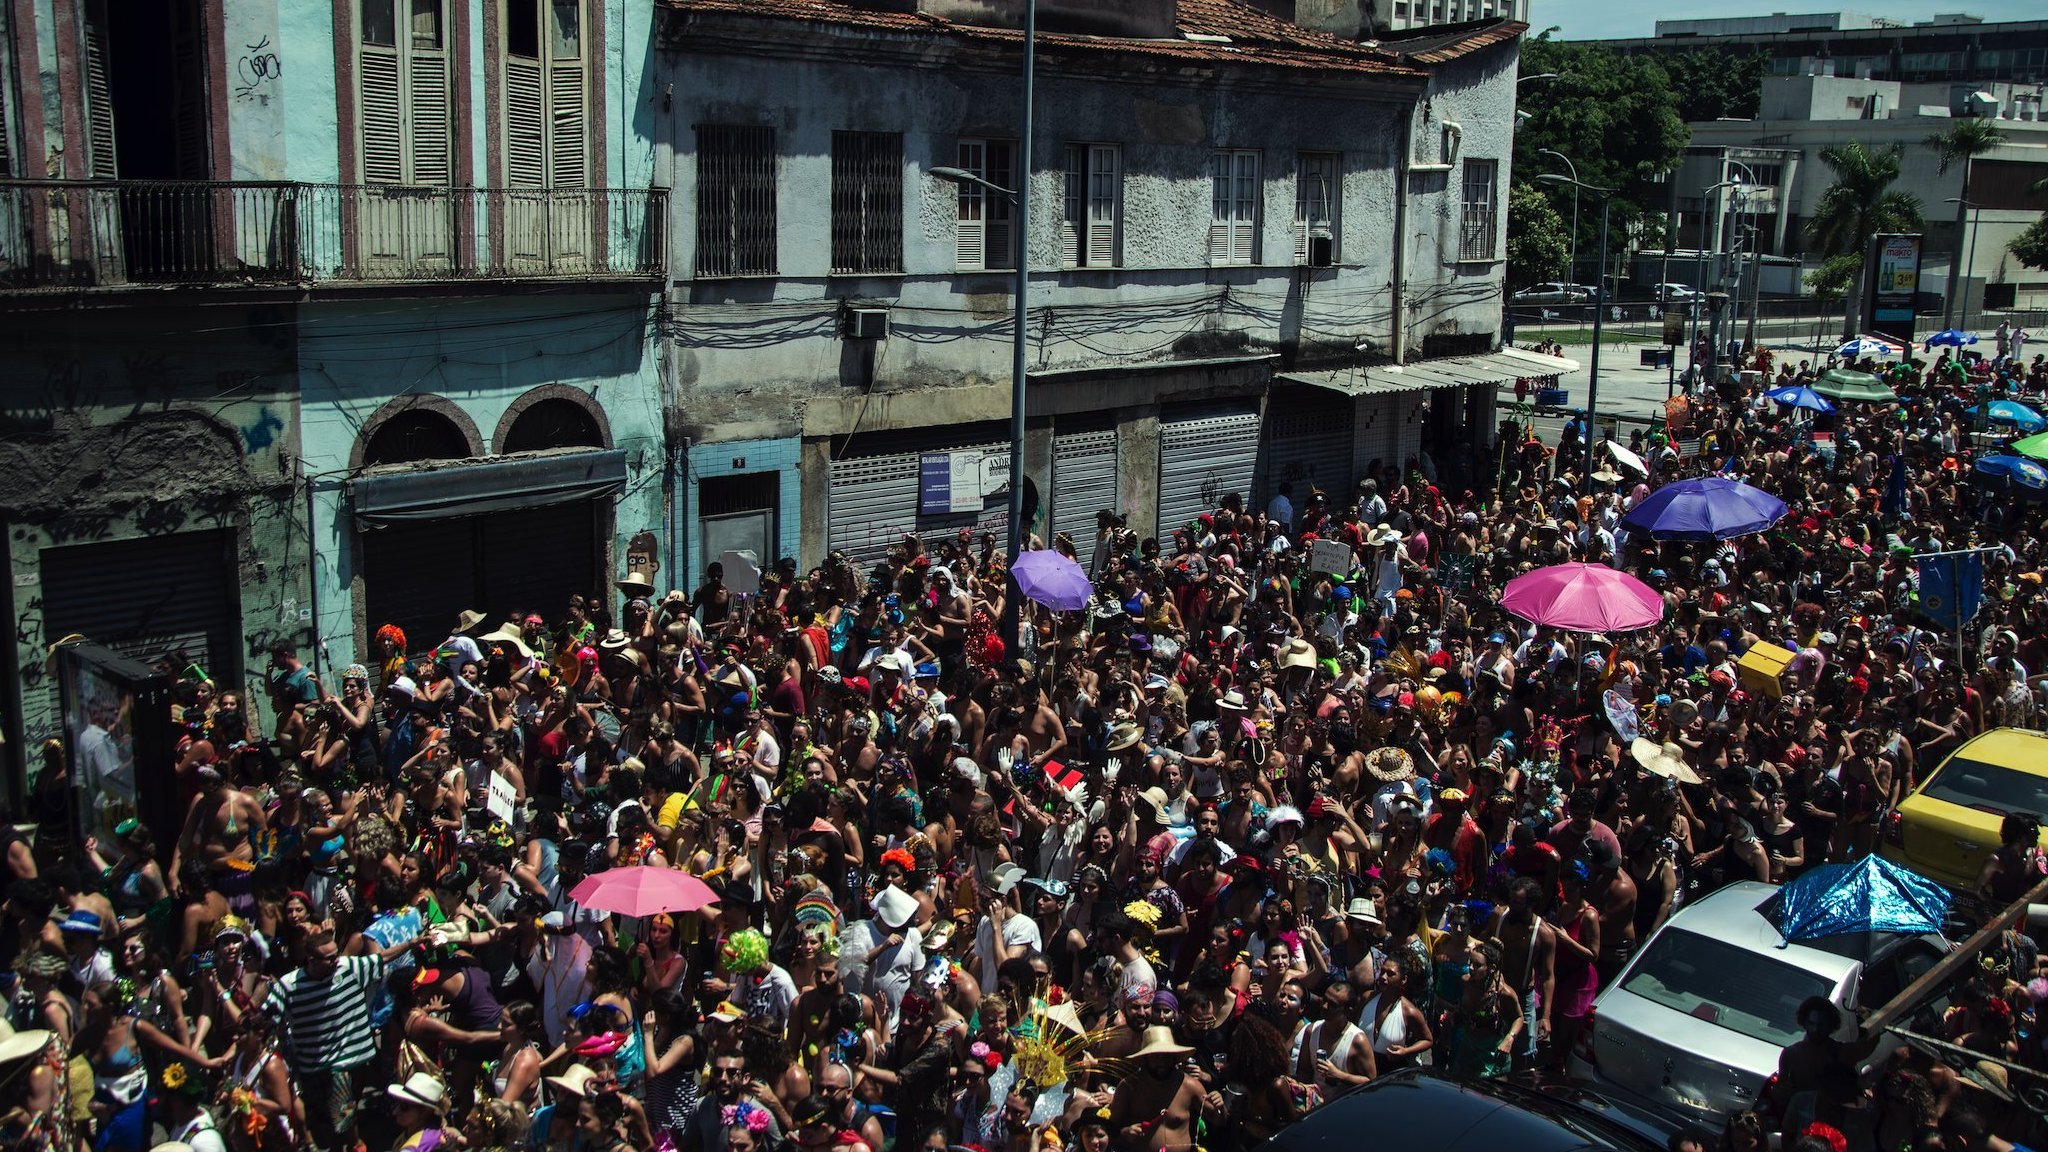 Prefeitura do Rio cancela Carnaval de rua devido à Covid pelo 2º